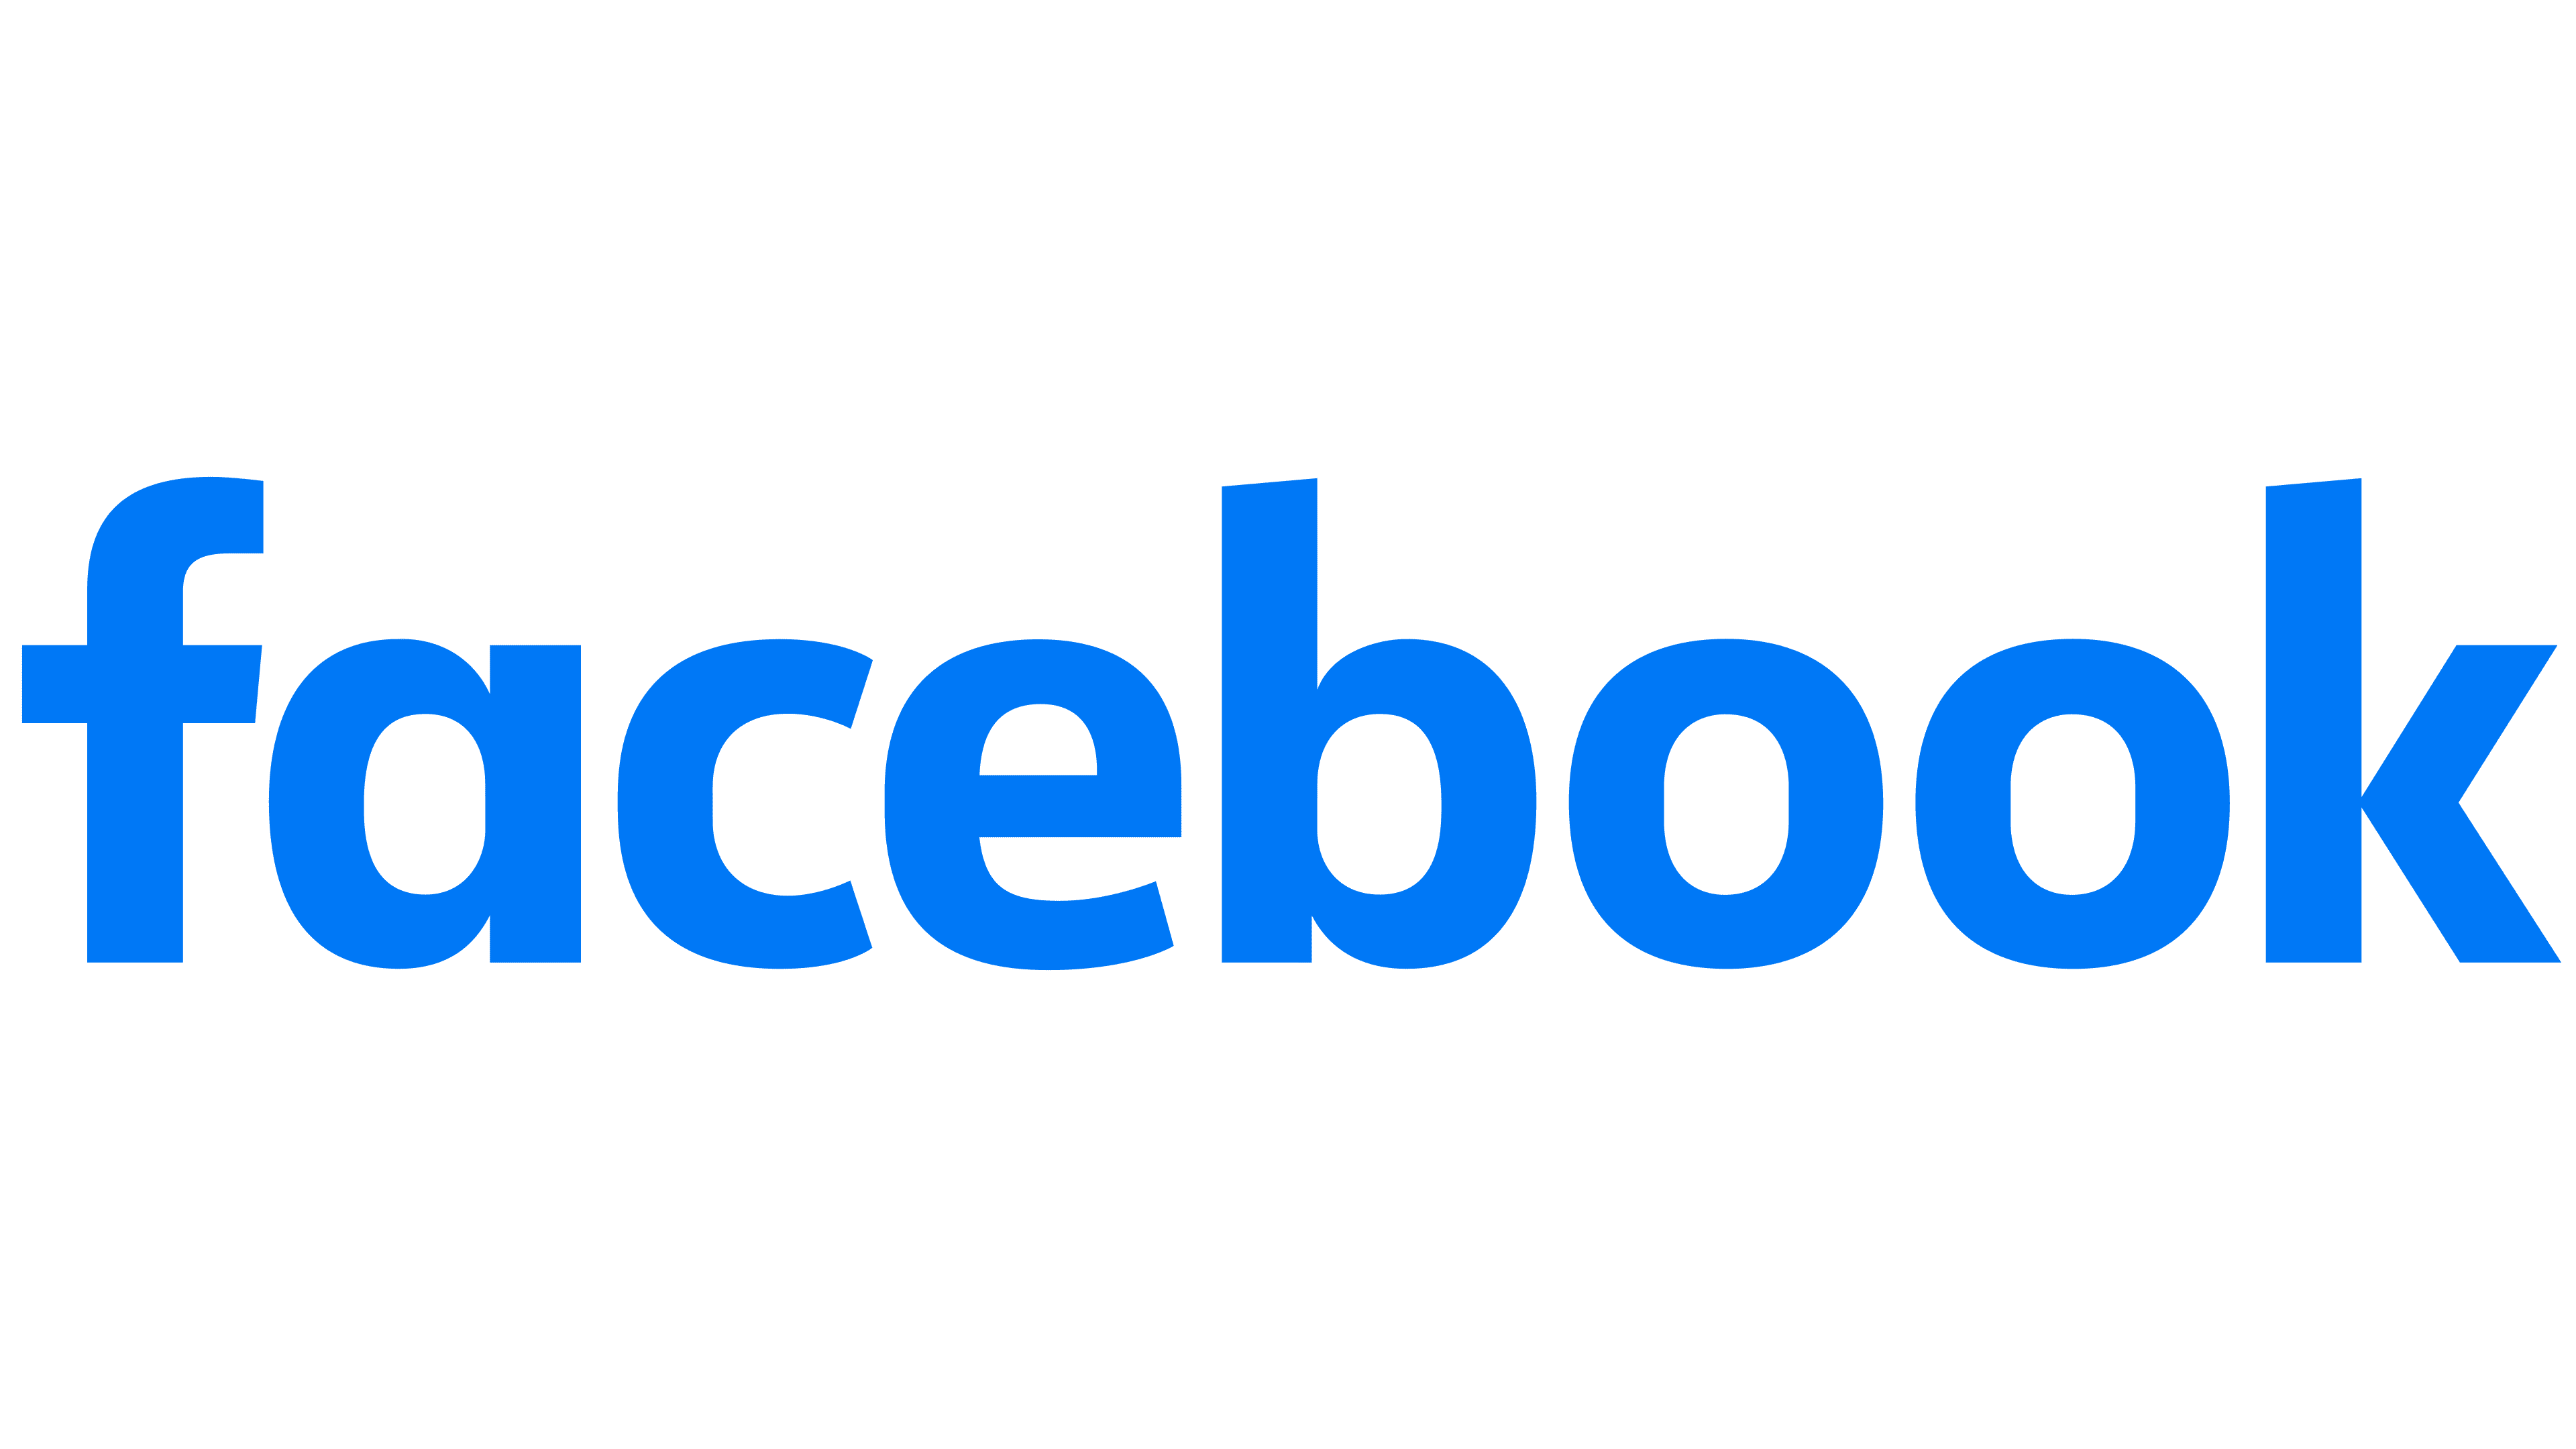 Martech-Facebook-Logo